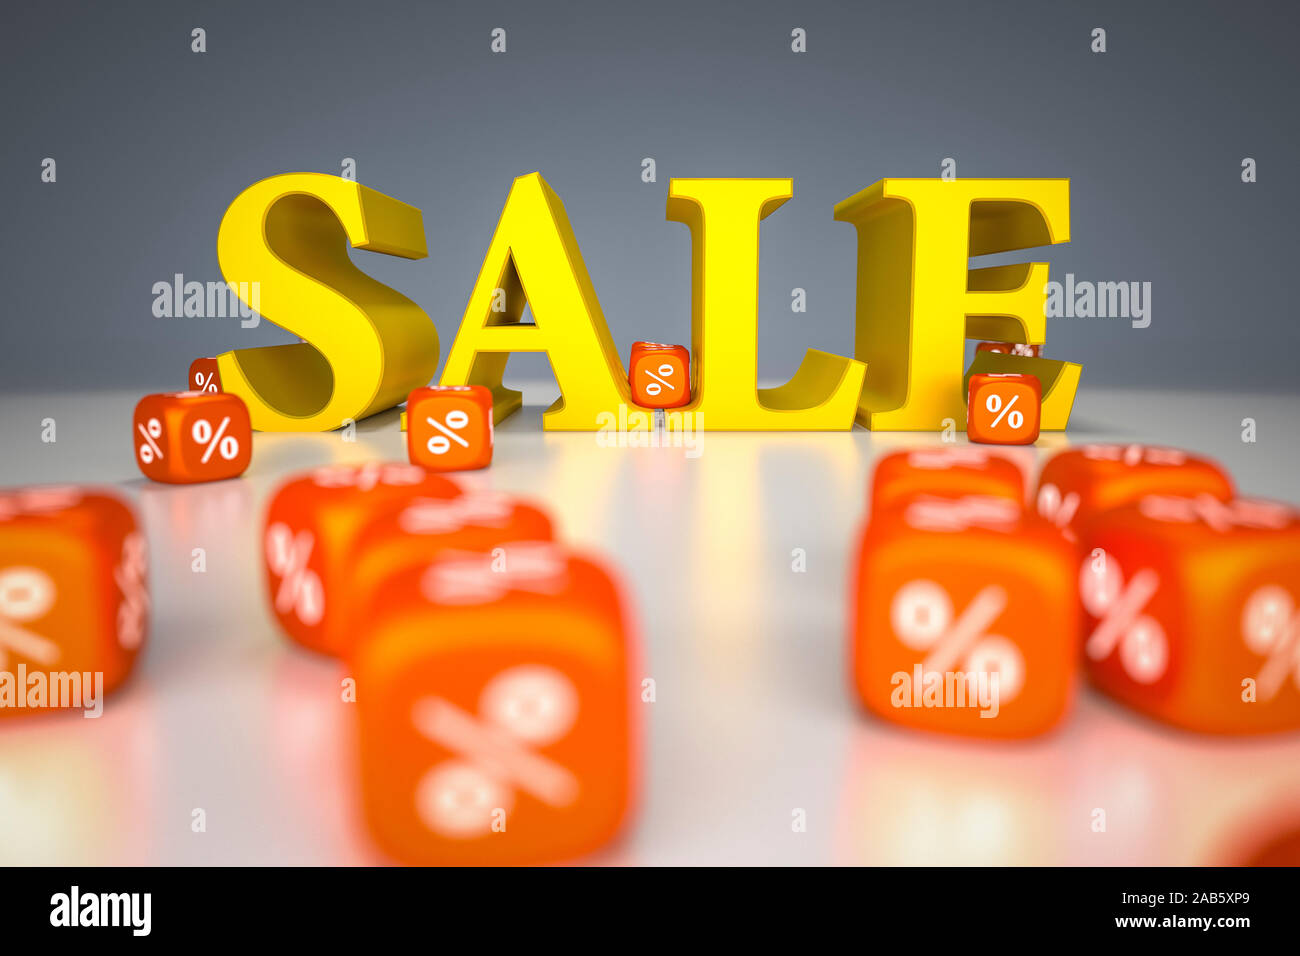 Vier gelbe Buchstaben, die das Wort 'Sale' ergeben, umgeben von roten Wuerfeln mit dem Prozent-Symbol. Stock Photo